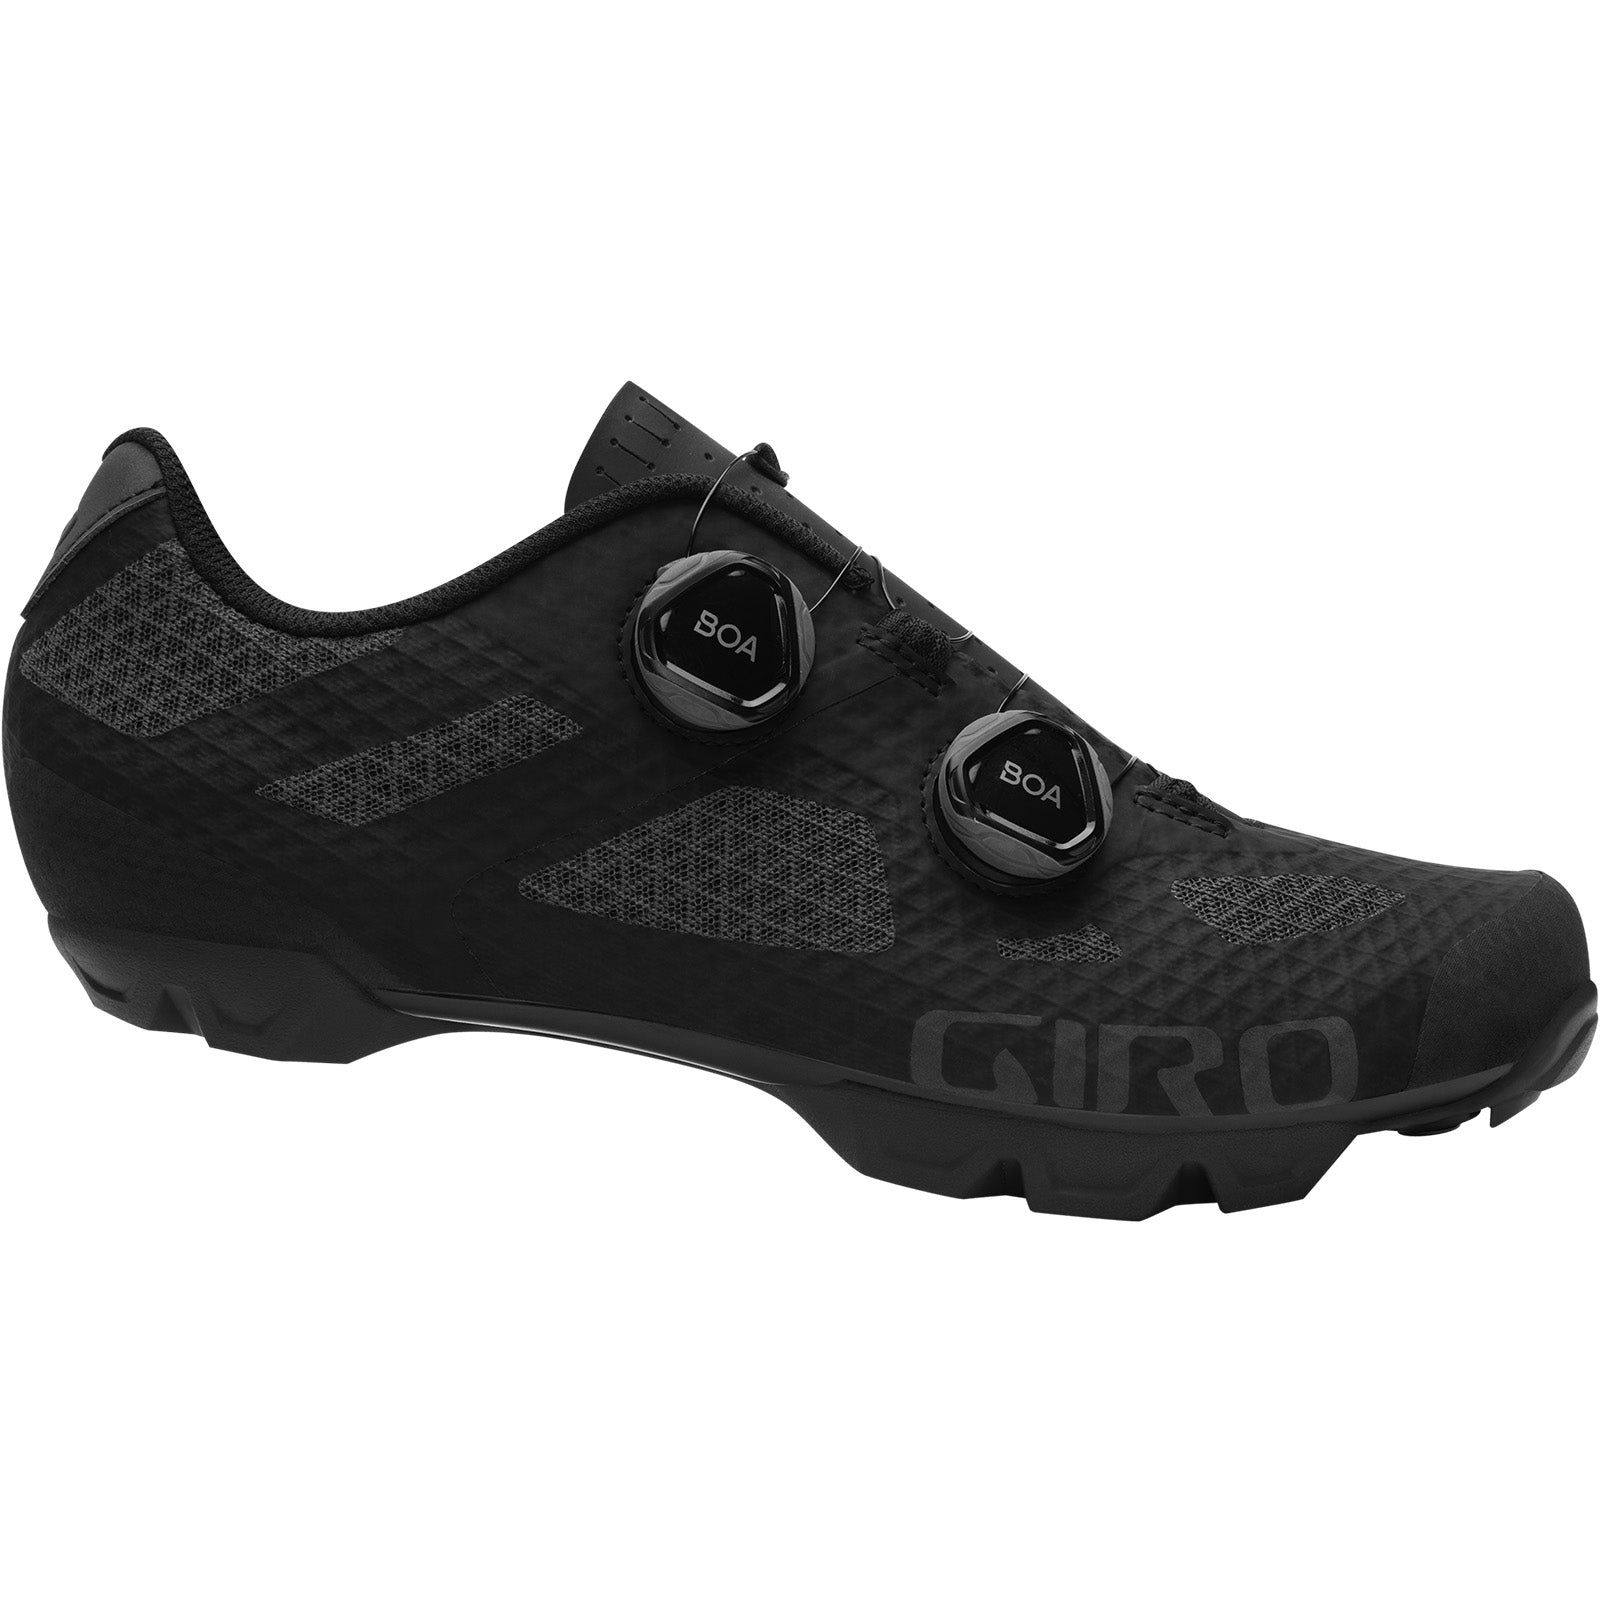 Giro - Sector Shoes